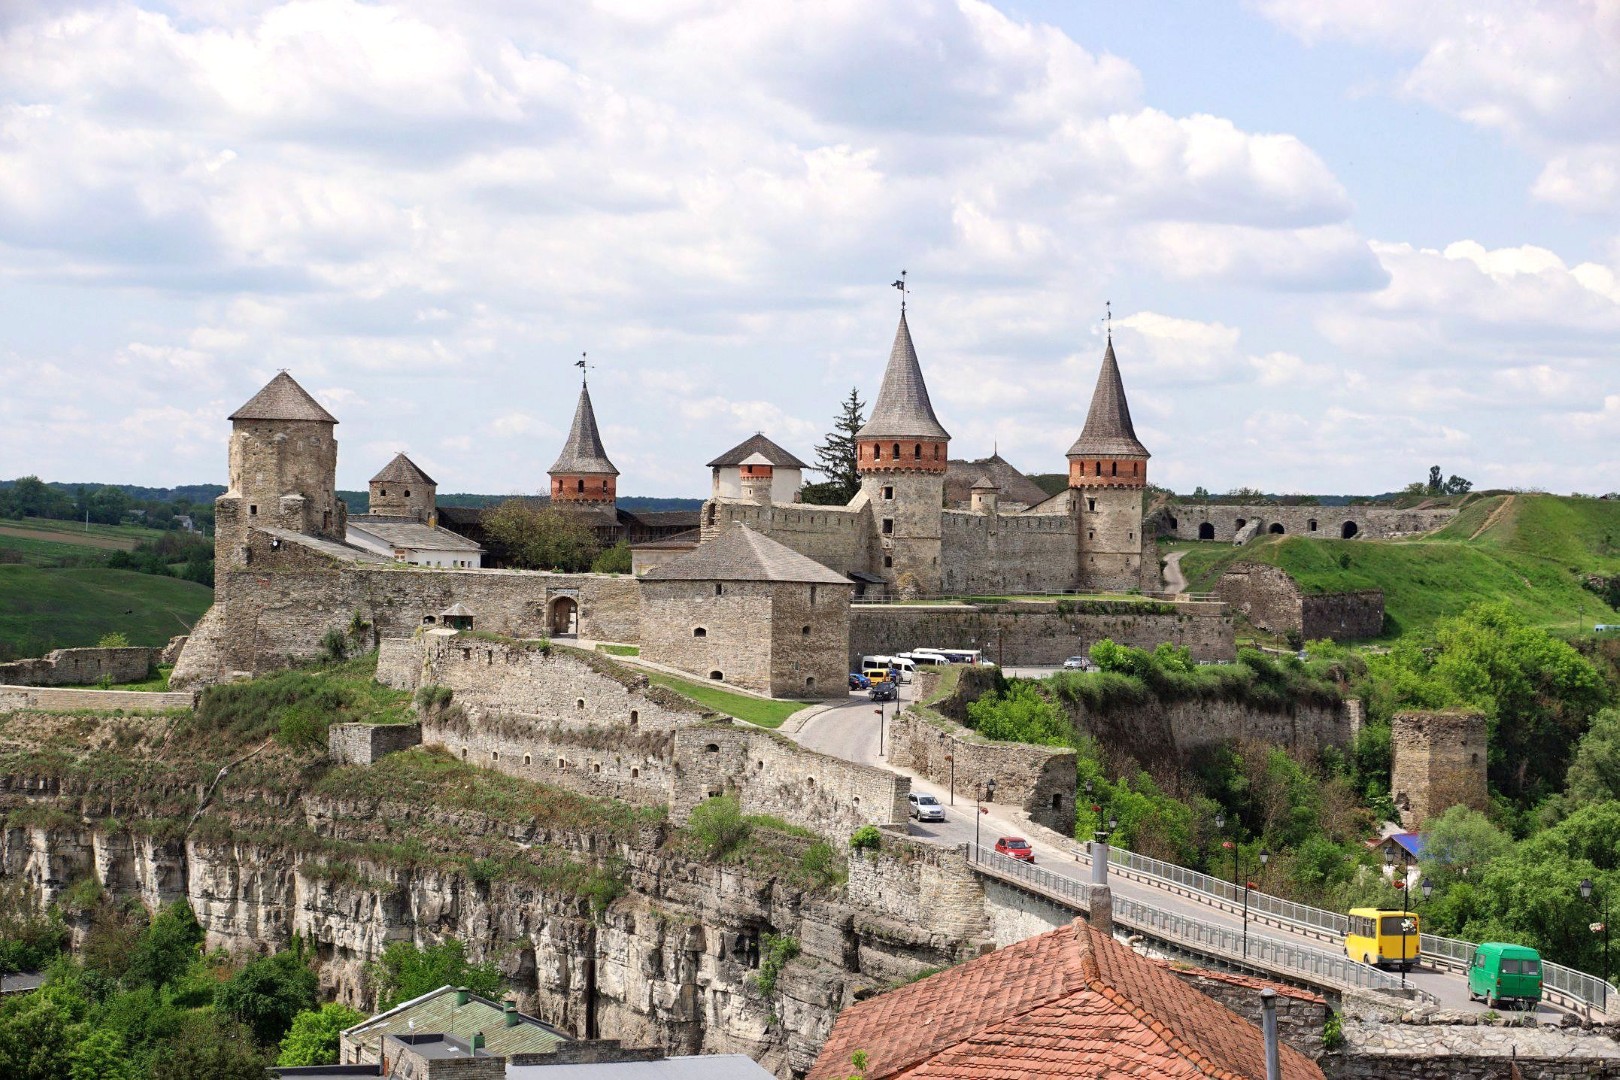 Zamek i twierdza w Kamieńcu Podolskim:), zdjęcia z Ukrainy